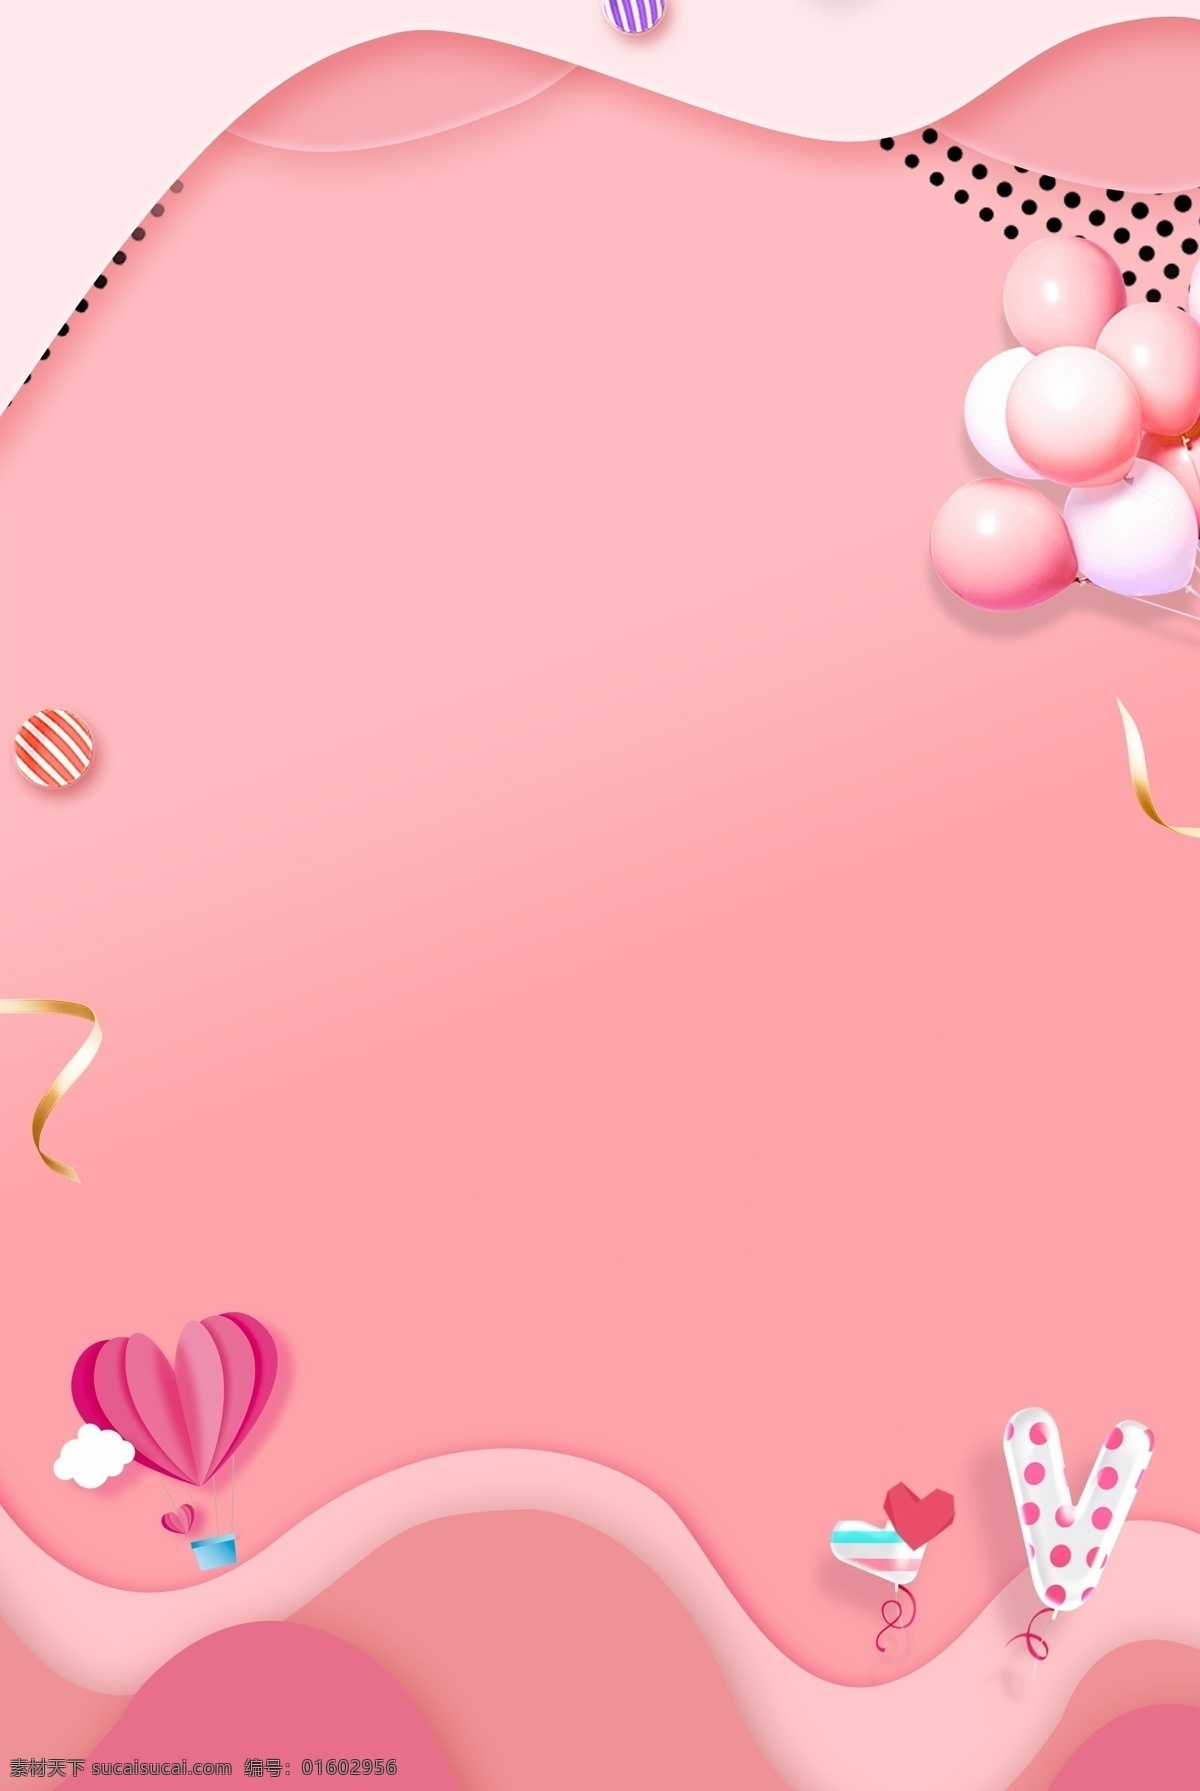 粉色背景 214背景 314背景 情人节背景 爱情 粉色海报 粉色传单 粉色单页 底纹边框 背景底纹